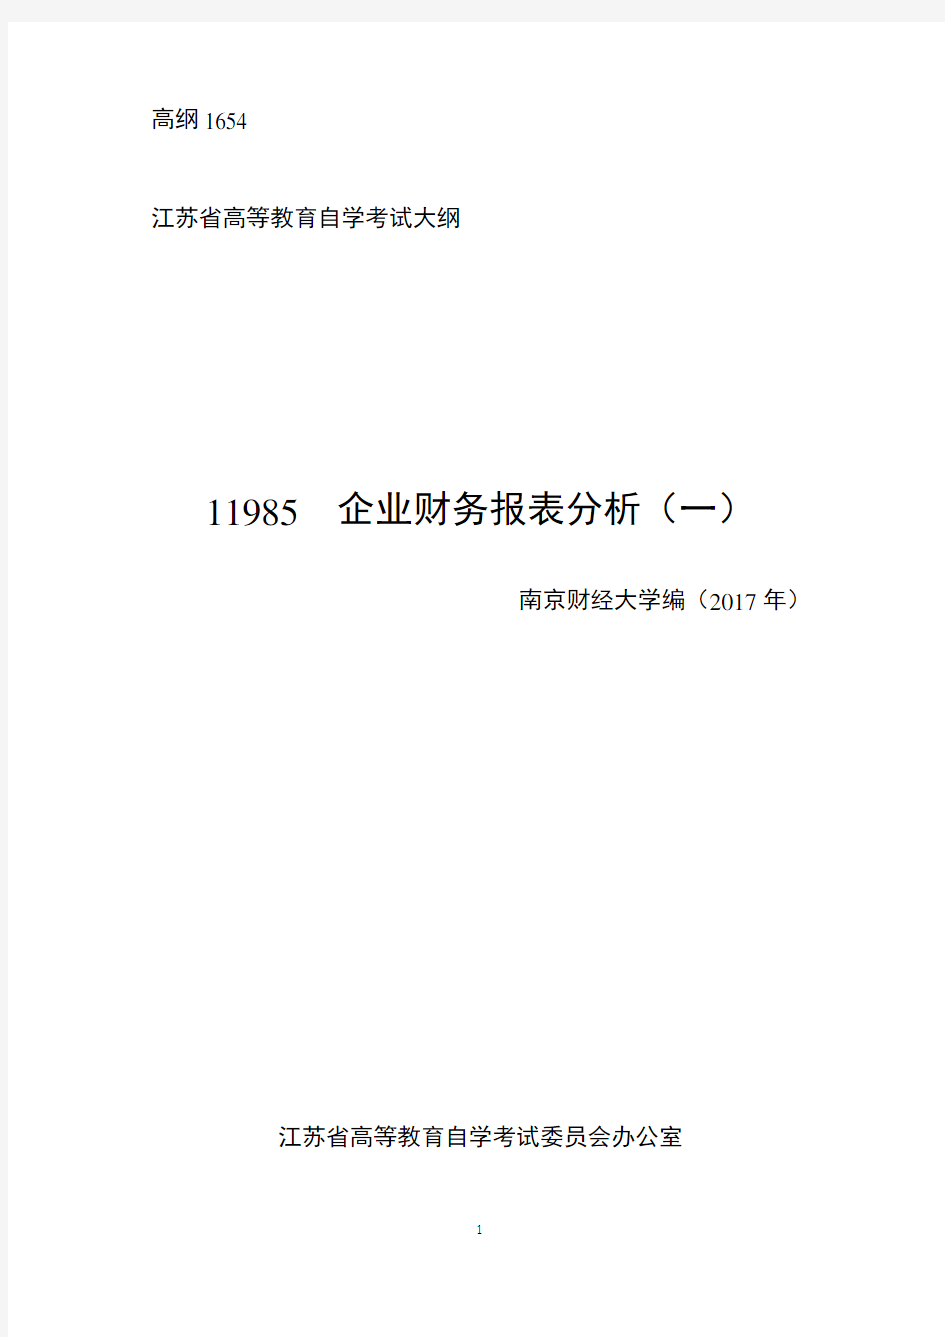 江苏自学考试 11985  企业财务报表分析(一)